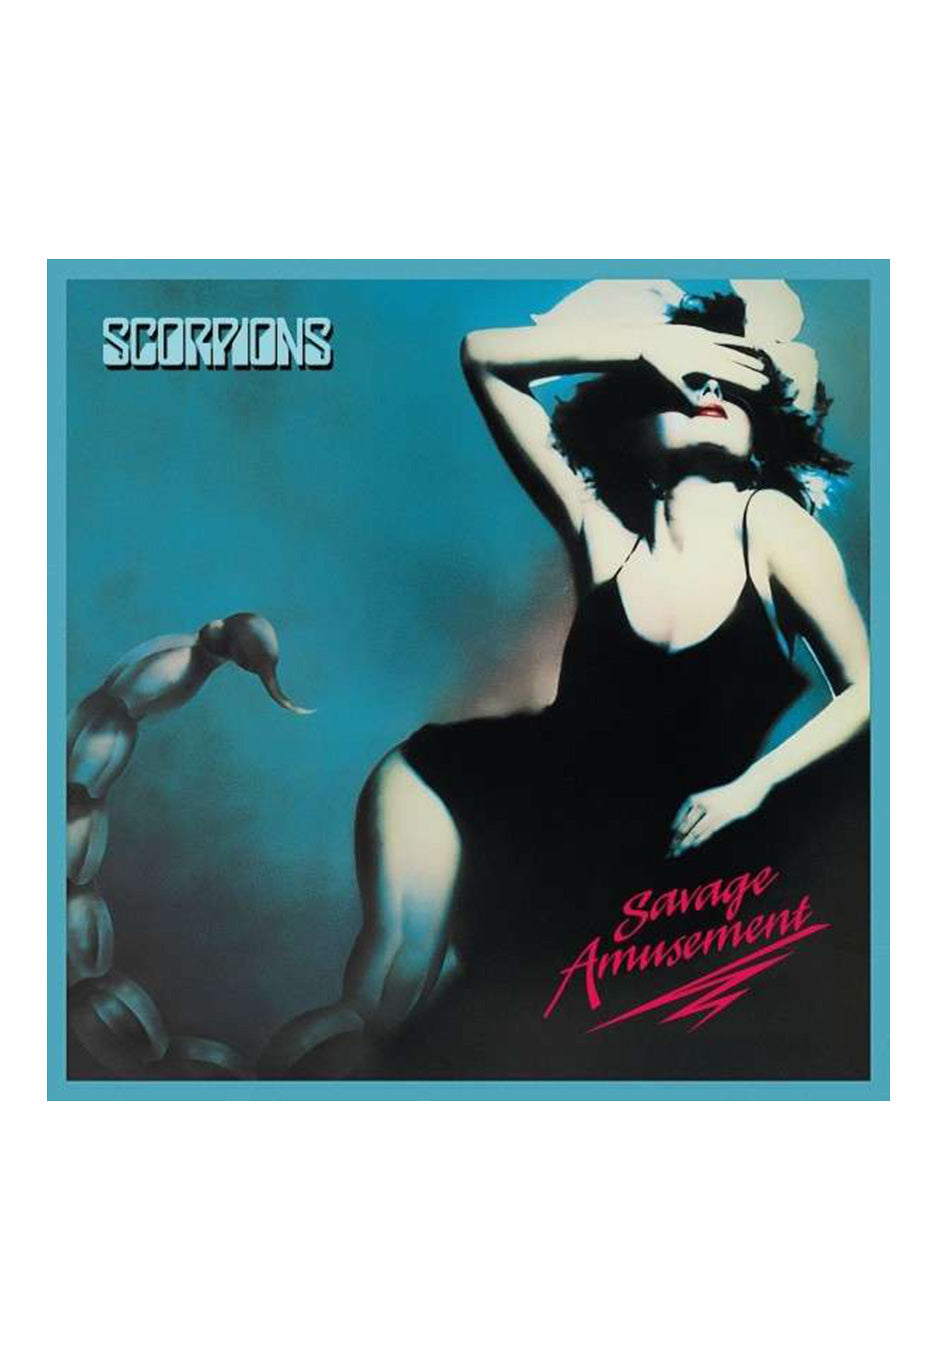 Scorpions - Savage Amusement - Digipak CD